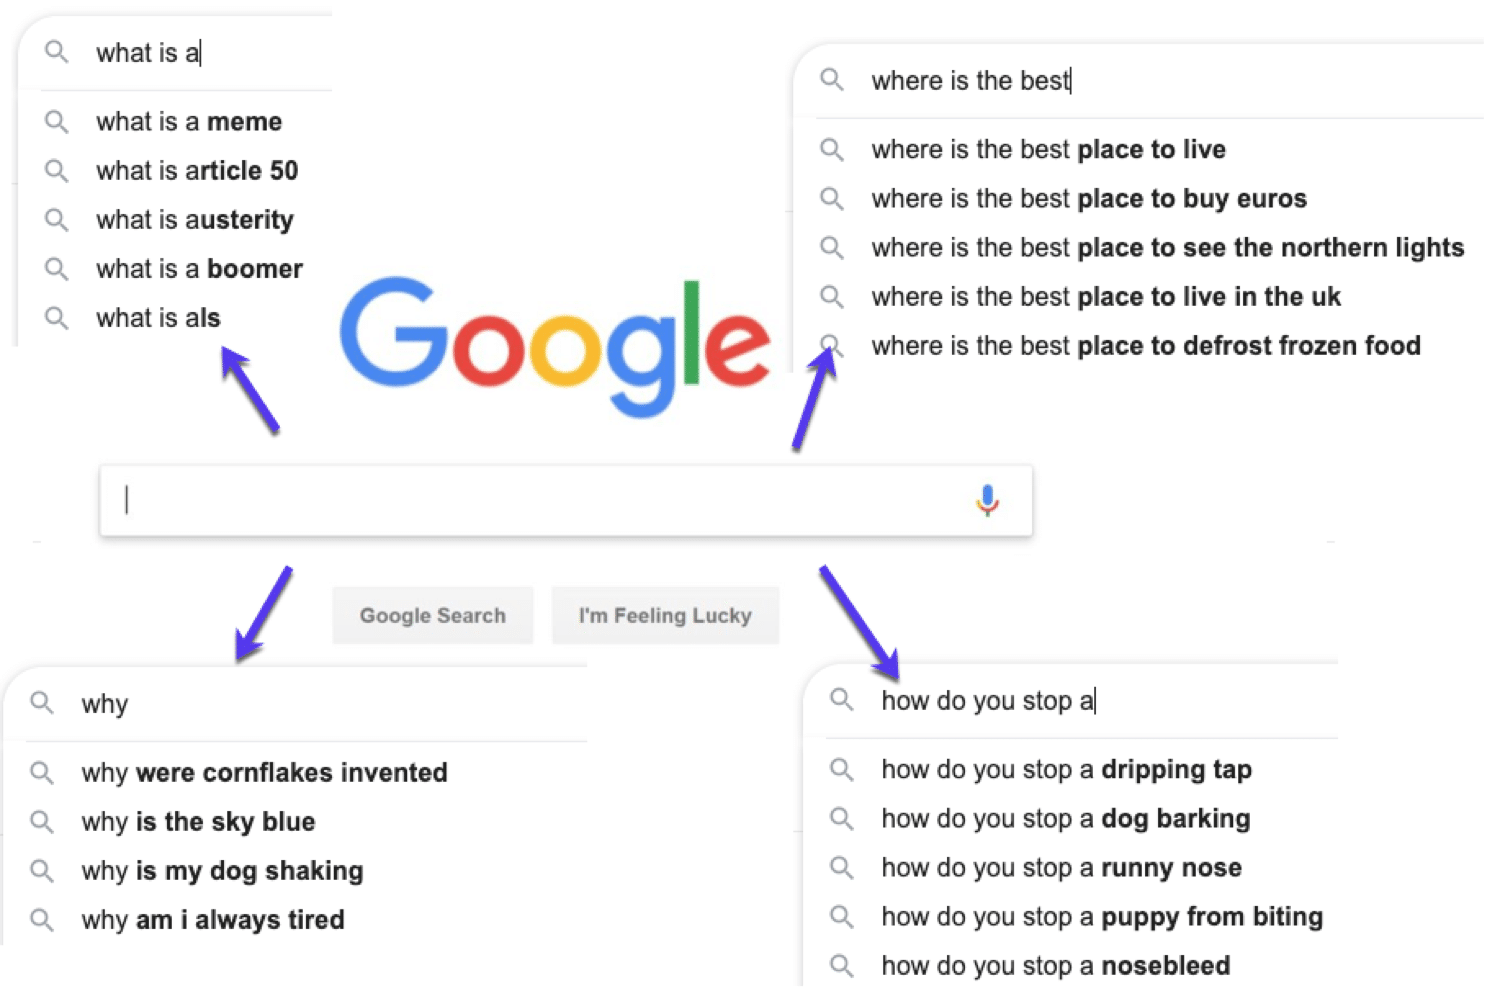 Voorbeelden van vragen die mensen op Google stellen